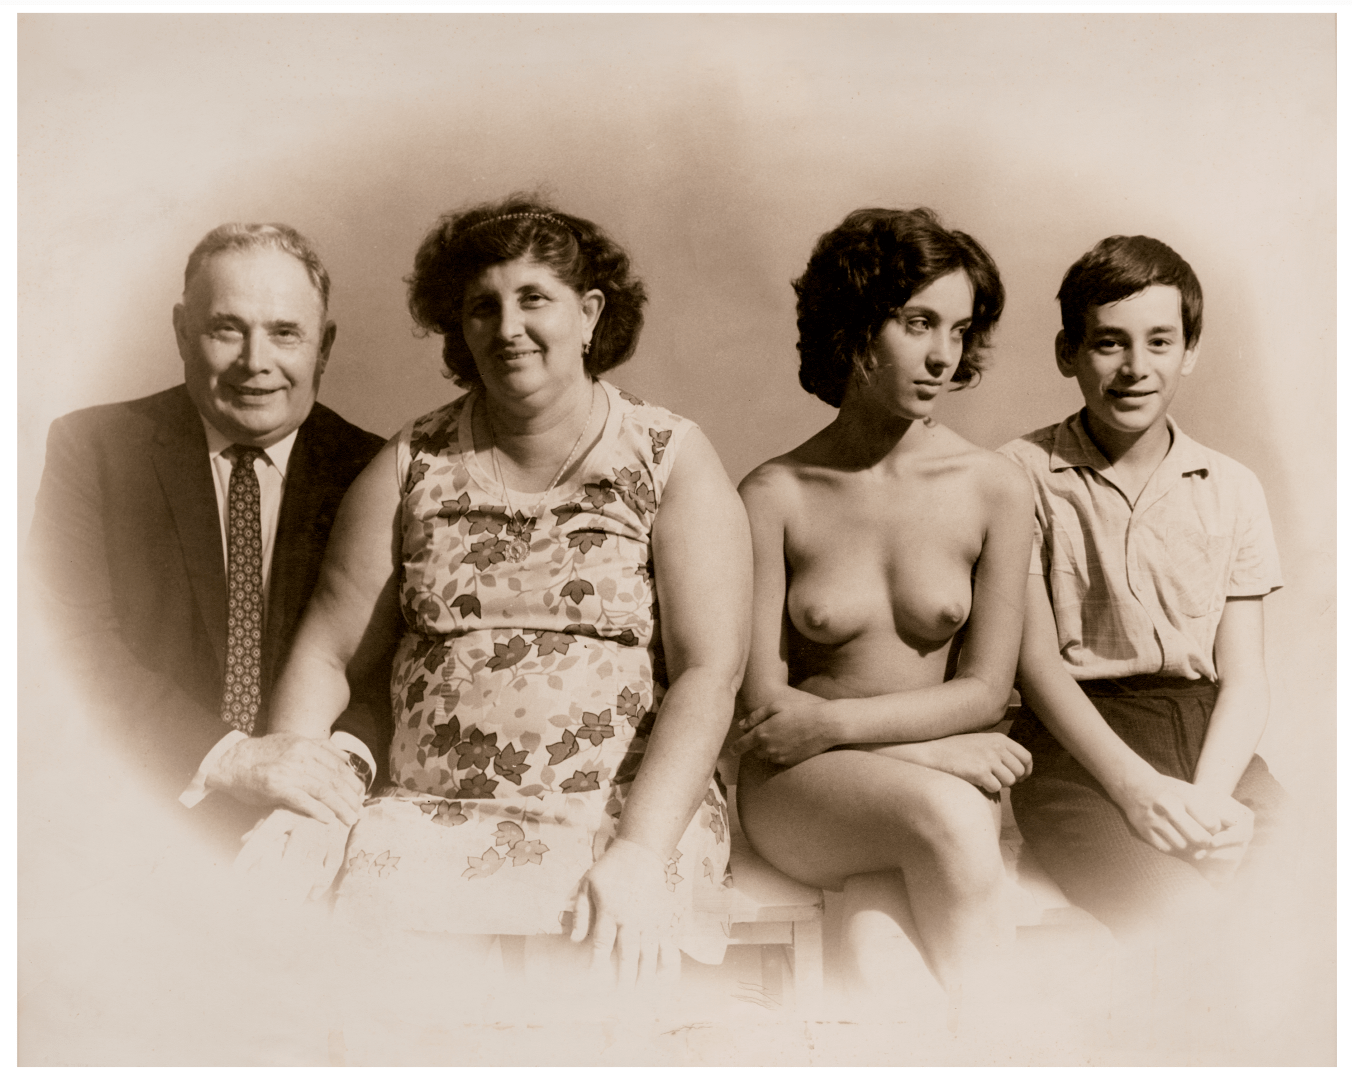 daniel sadeh recommends retro nudism pics pic